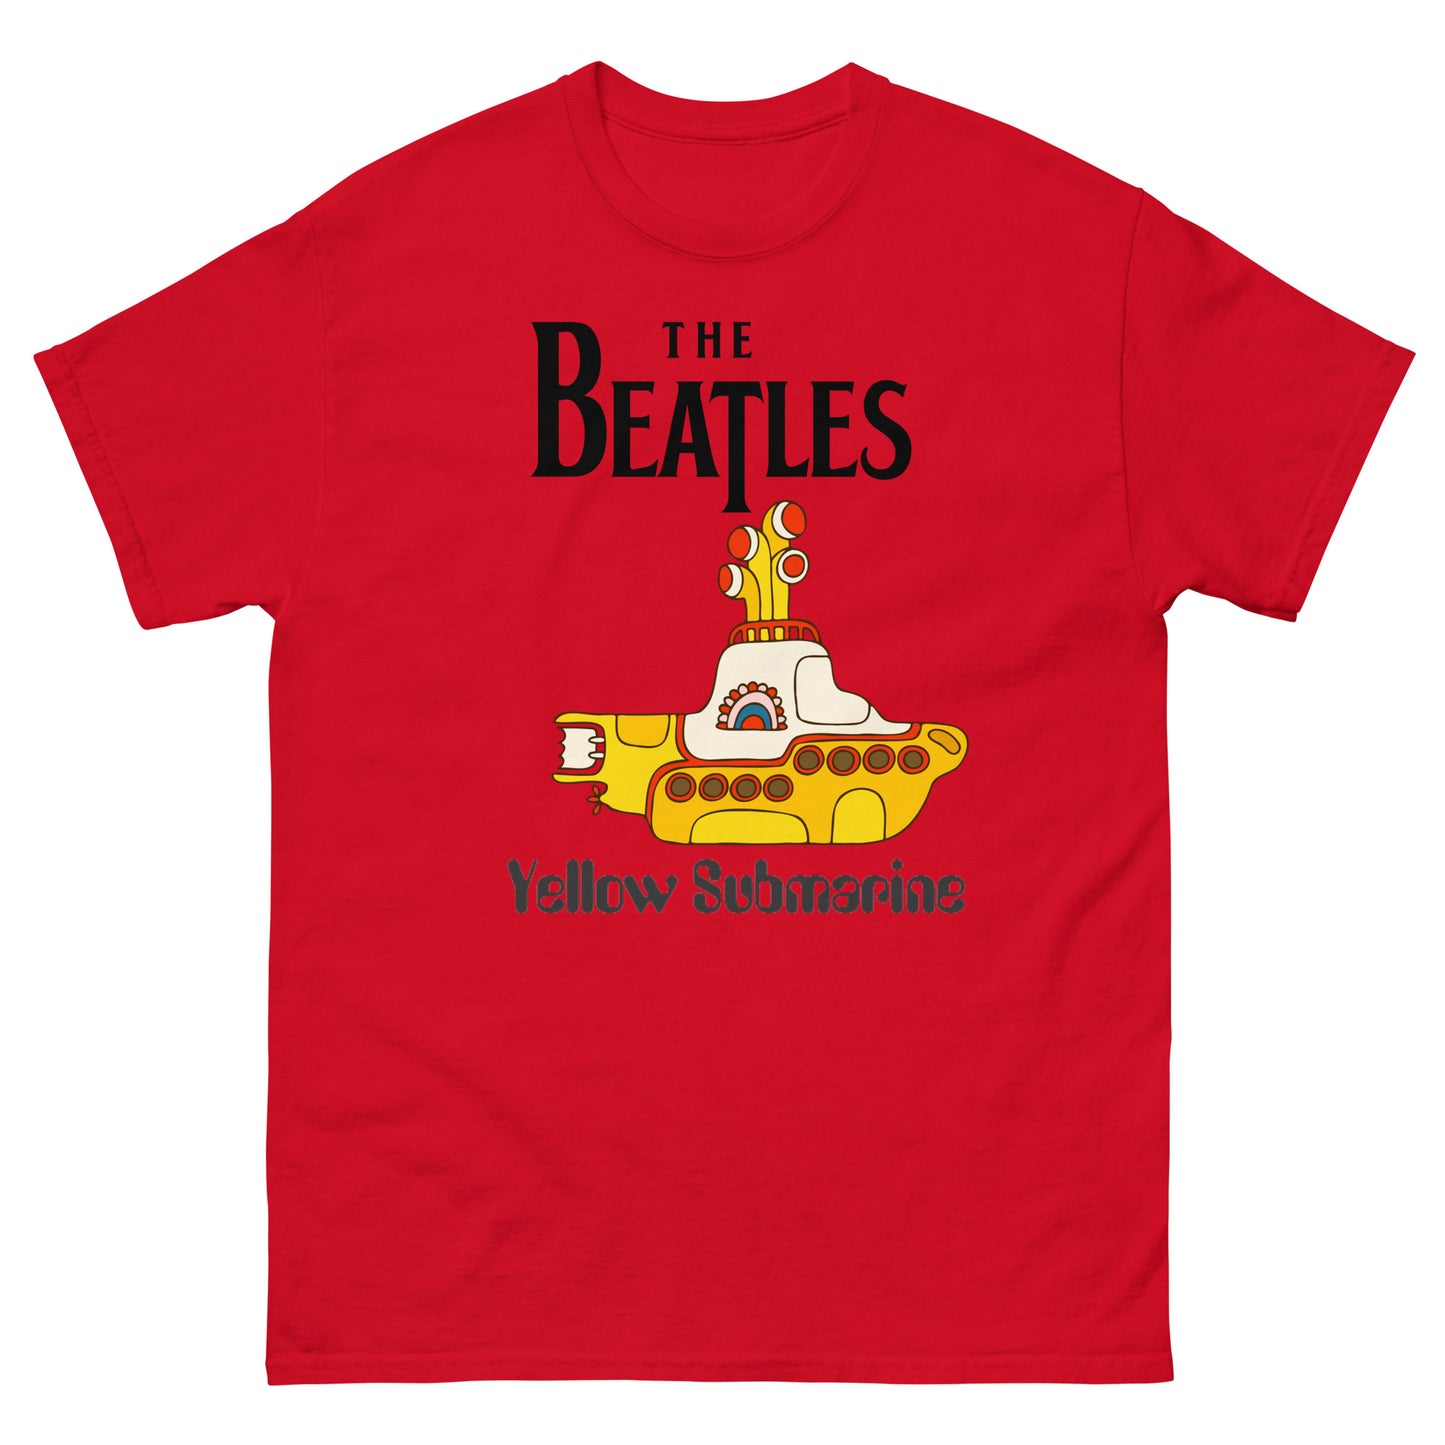 The Yellow Submarine Classic T-shirt